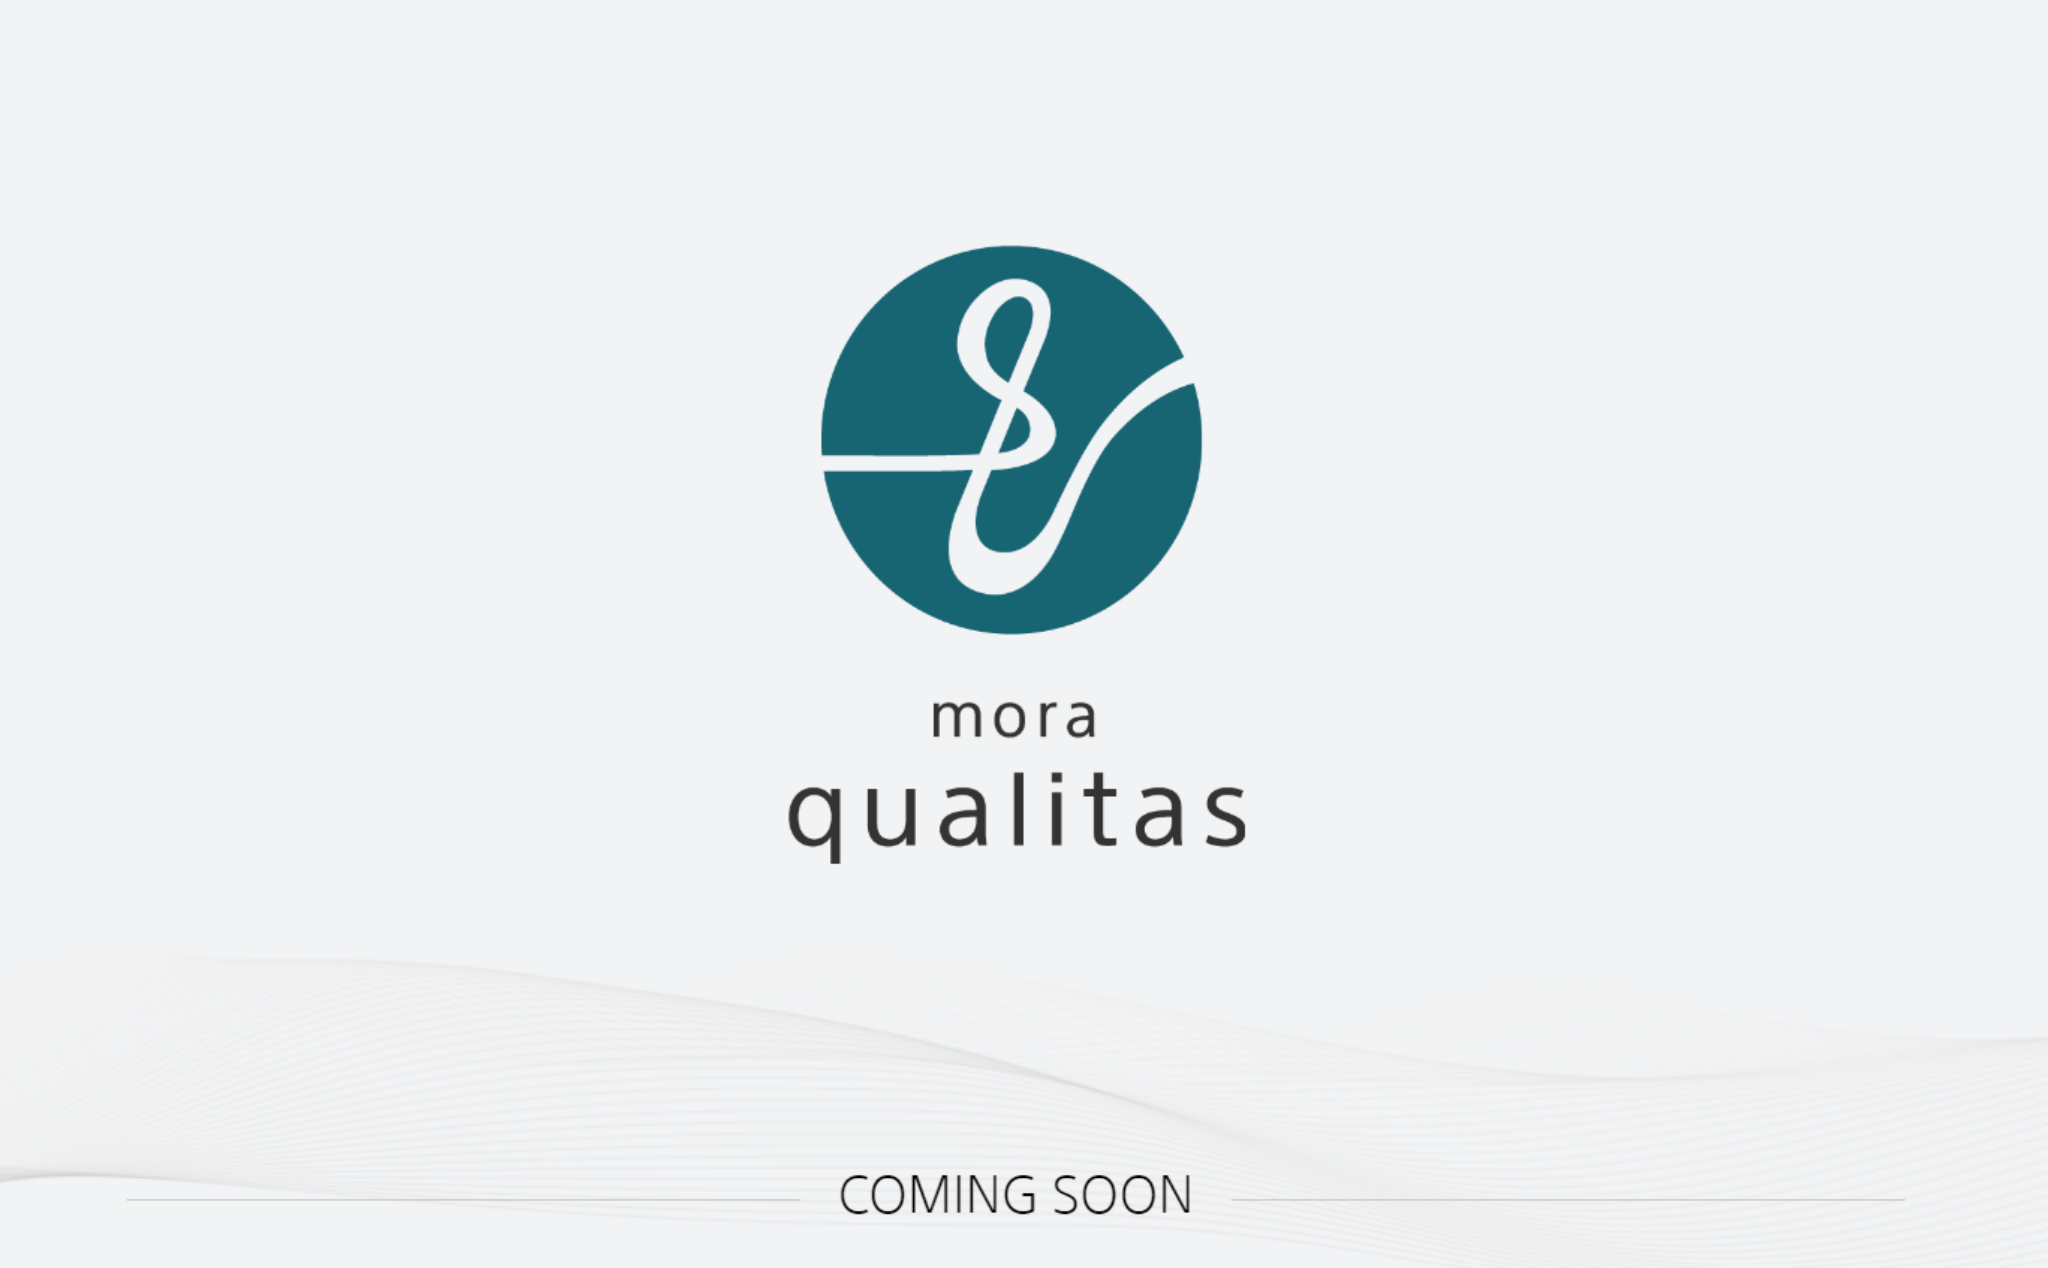 Dịch vụ stream nhạc Hi-Res 'Mora Qualitas' của Sony sẽ phát hành vào tháng 11, 450k/tháng